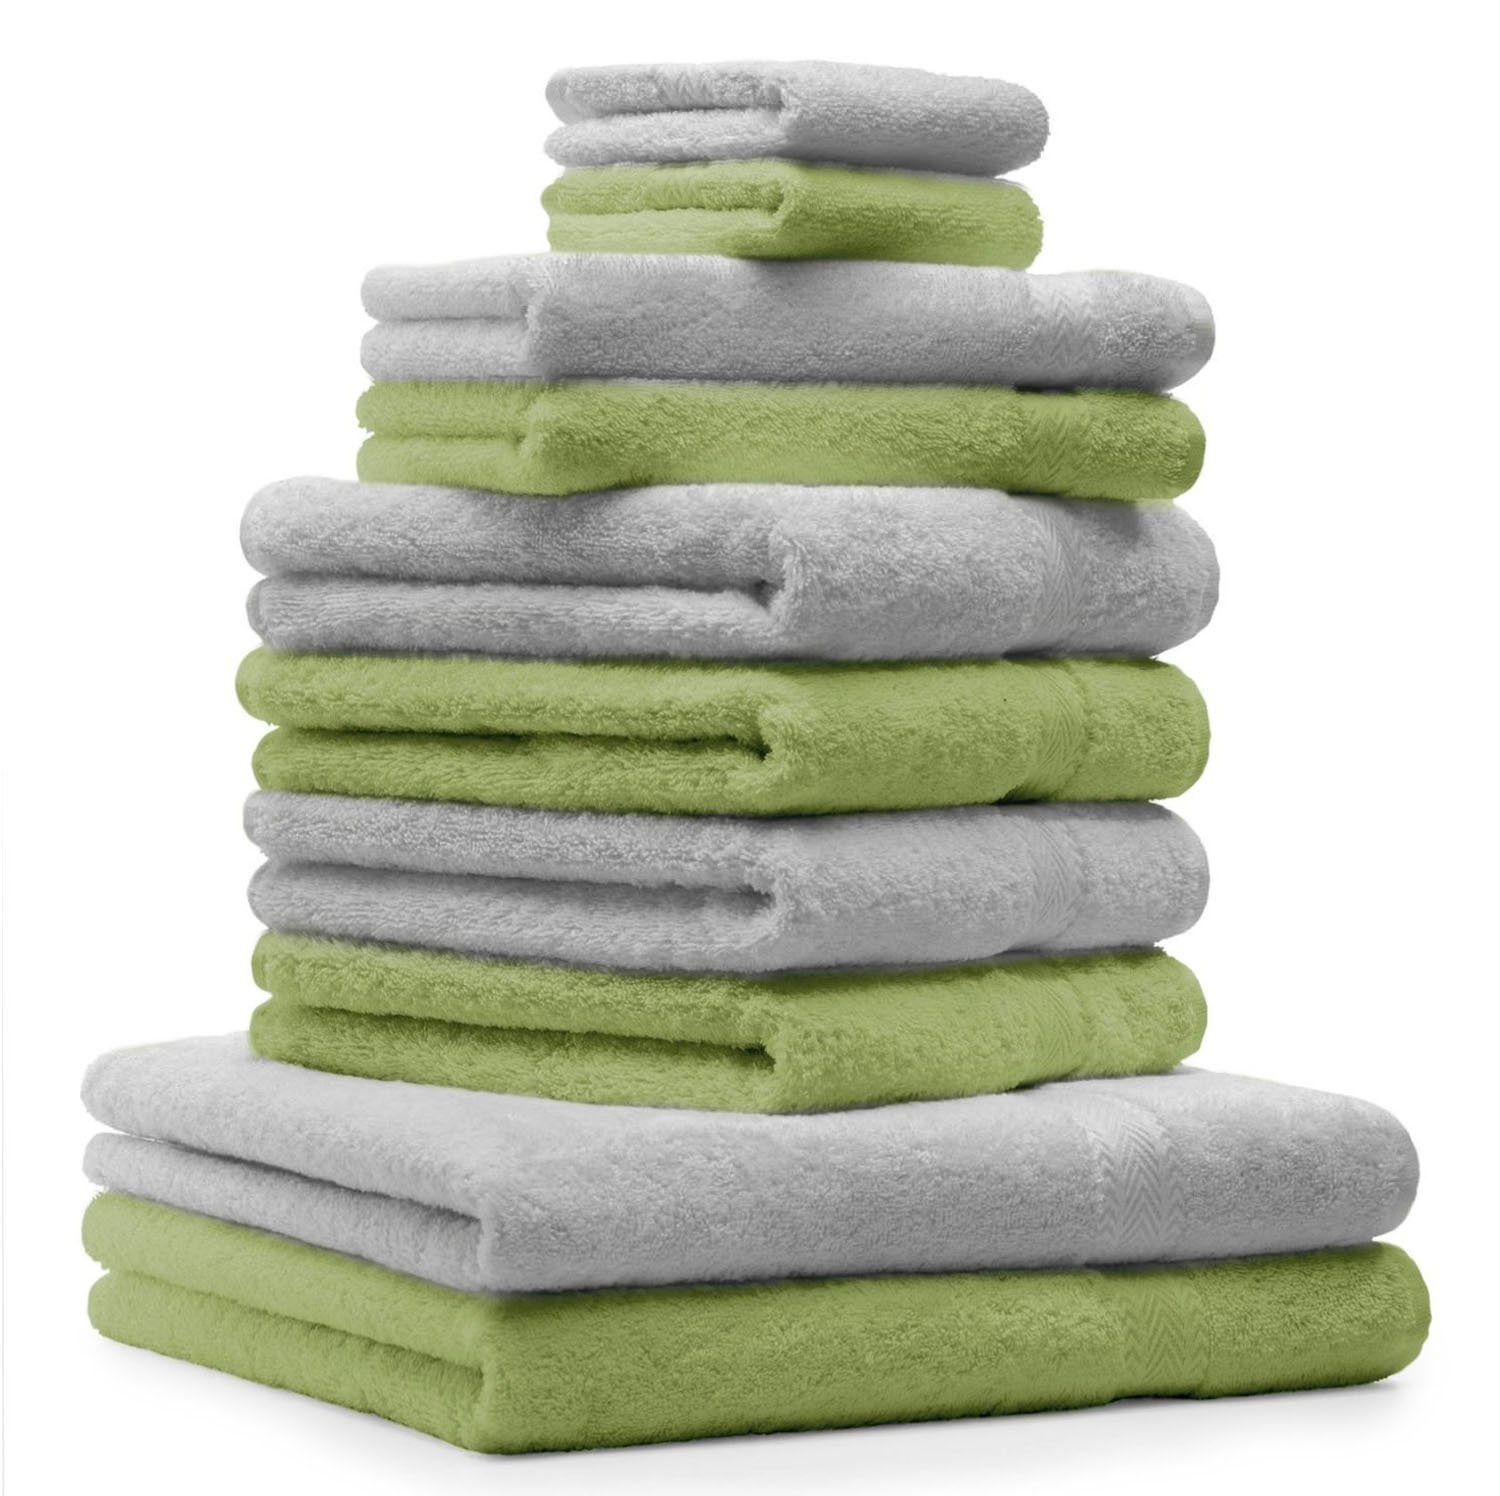 Betz Handtuch Set 10-TLG. Handtuch-Set & Handtücher Premium Baumwolle Grün, 100% 4 Silber Grau Baumwolle 2 2 Gästetücher 100% Apfel 2 Waschhandschuhe Duschtücher Farbe